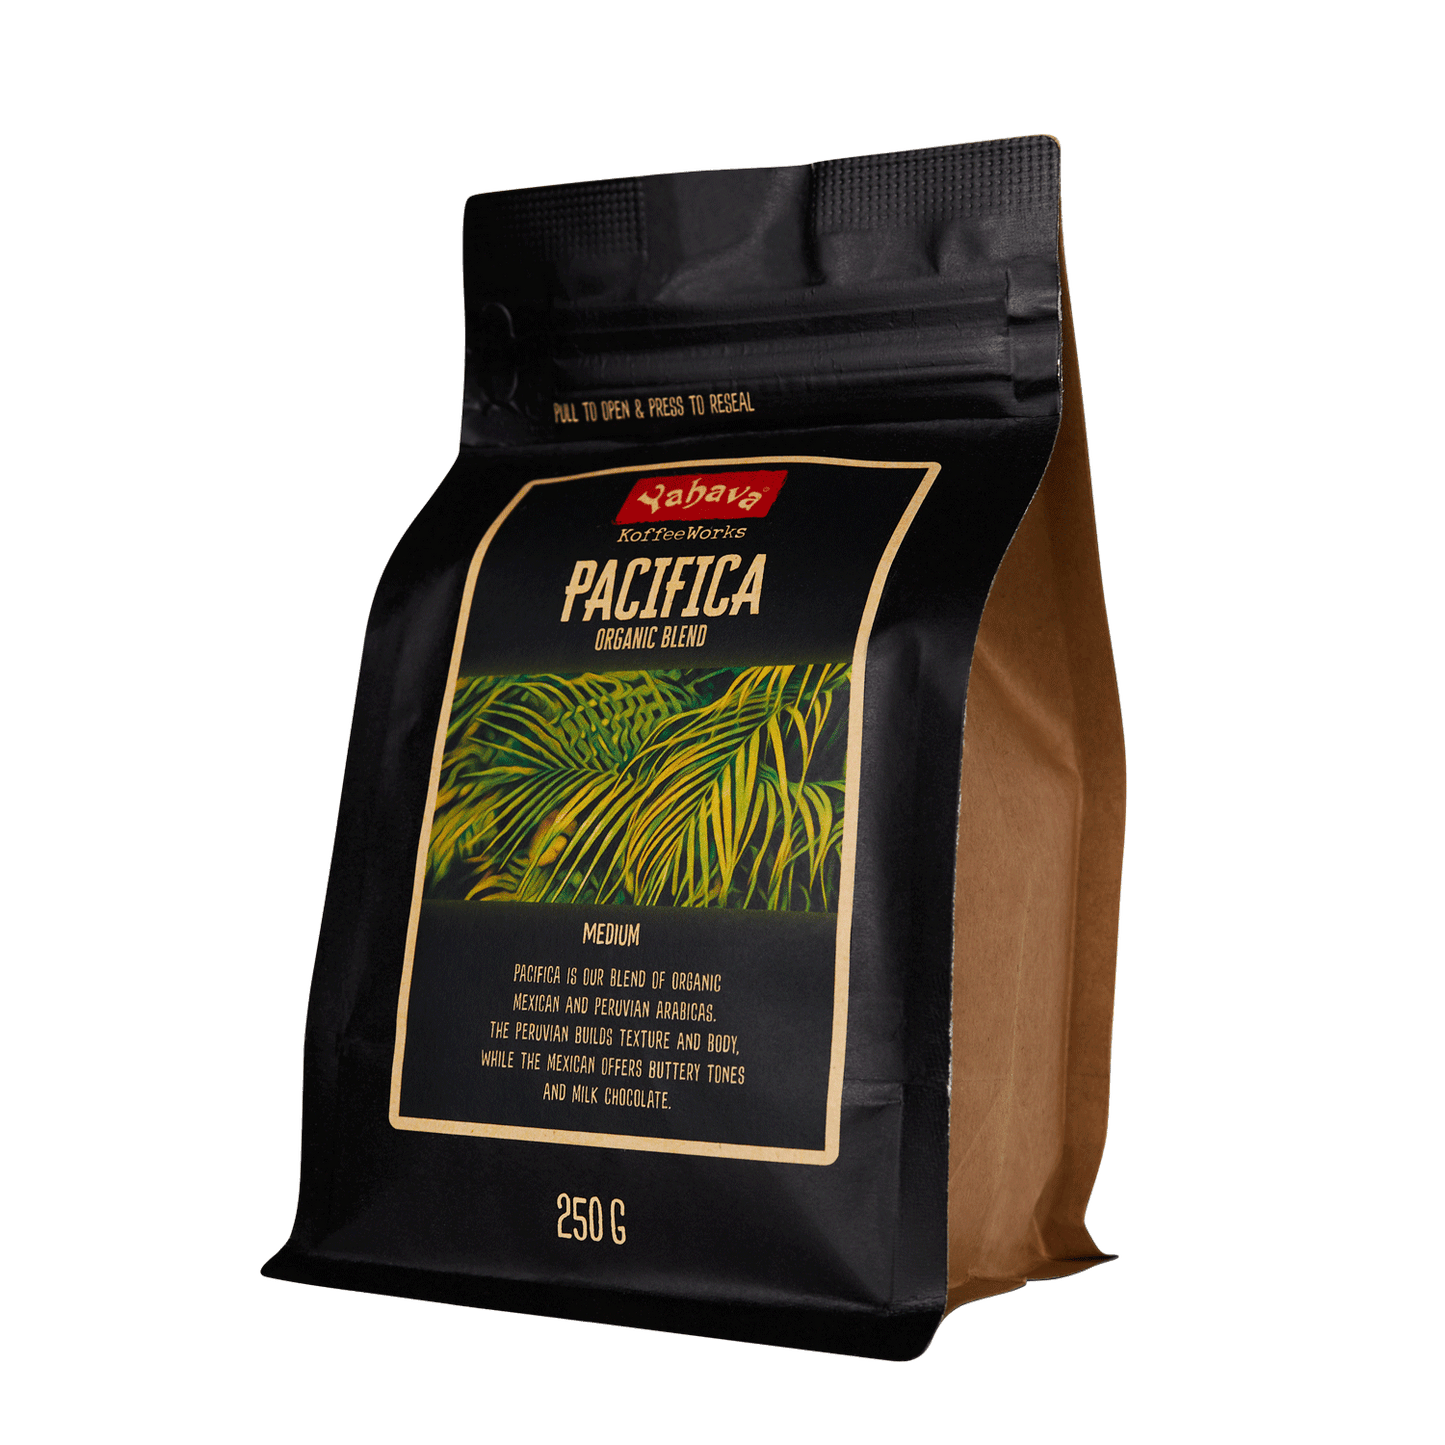 Pacificia Organic Coffee - Signature Range